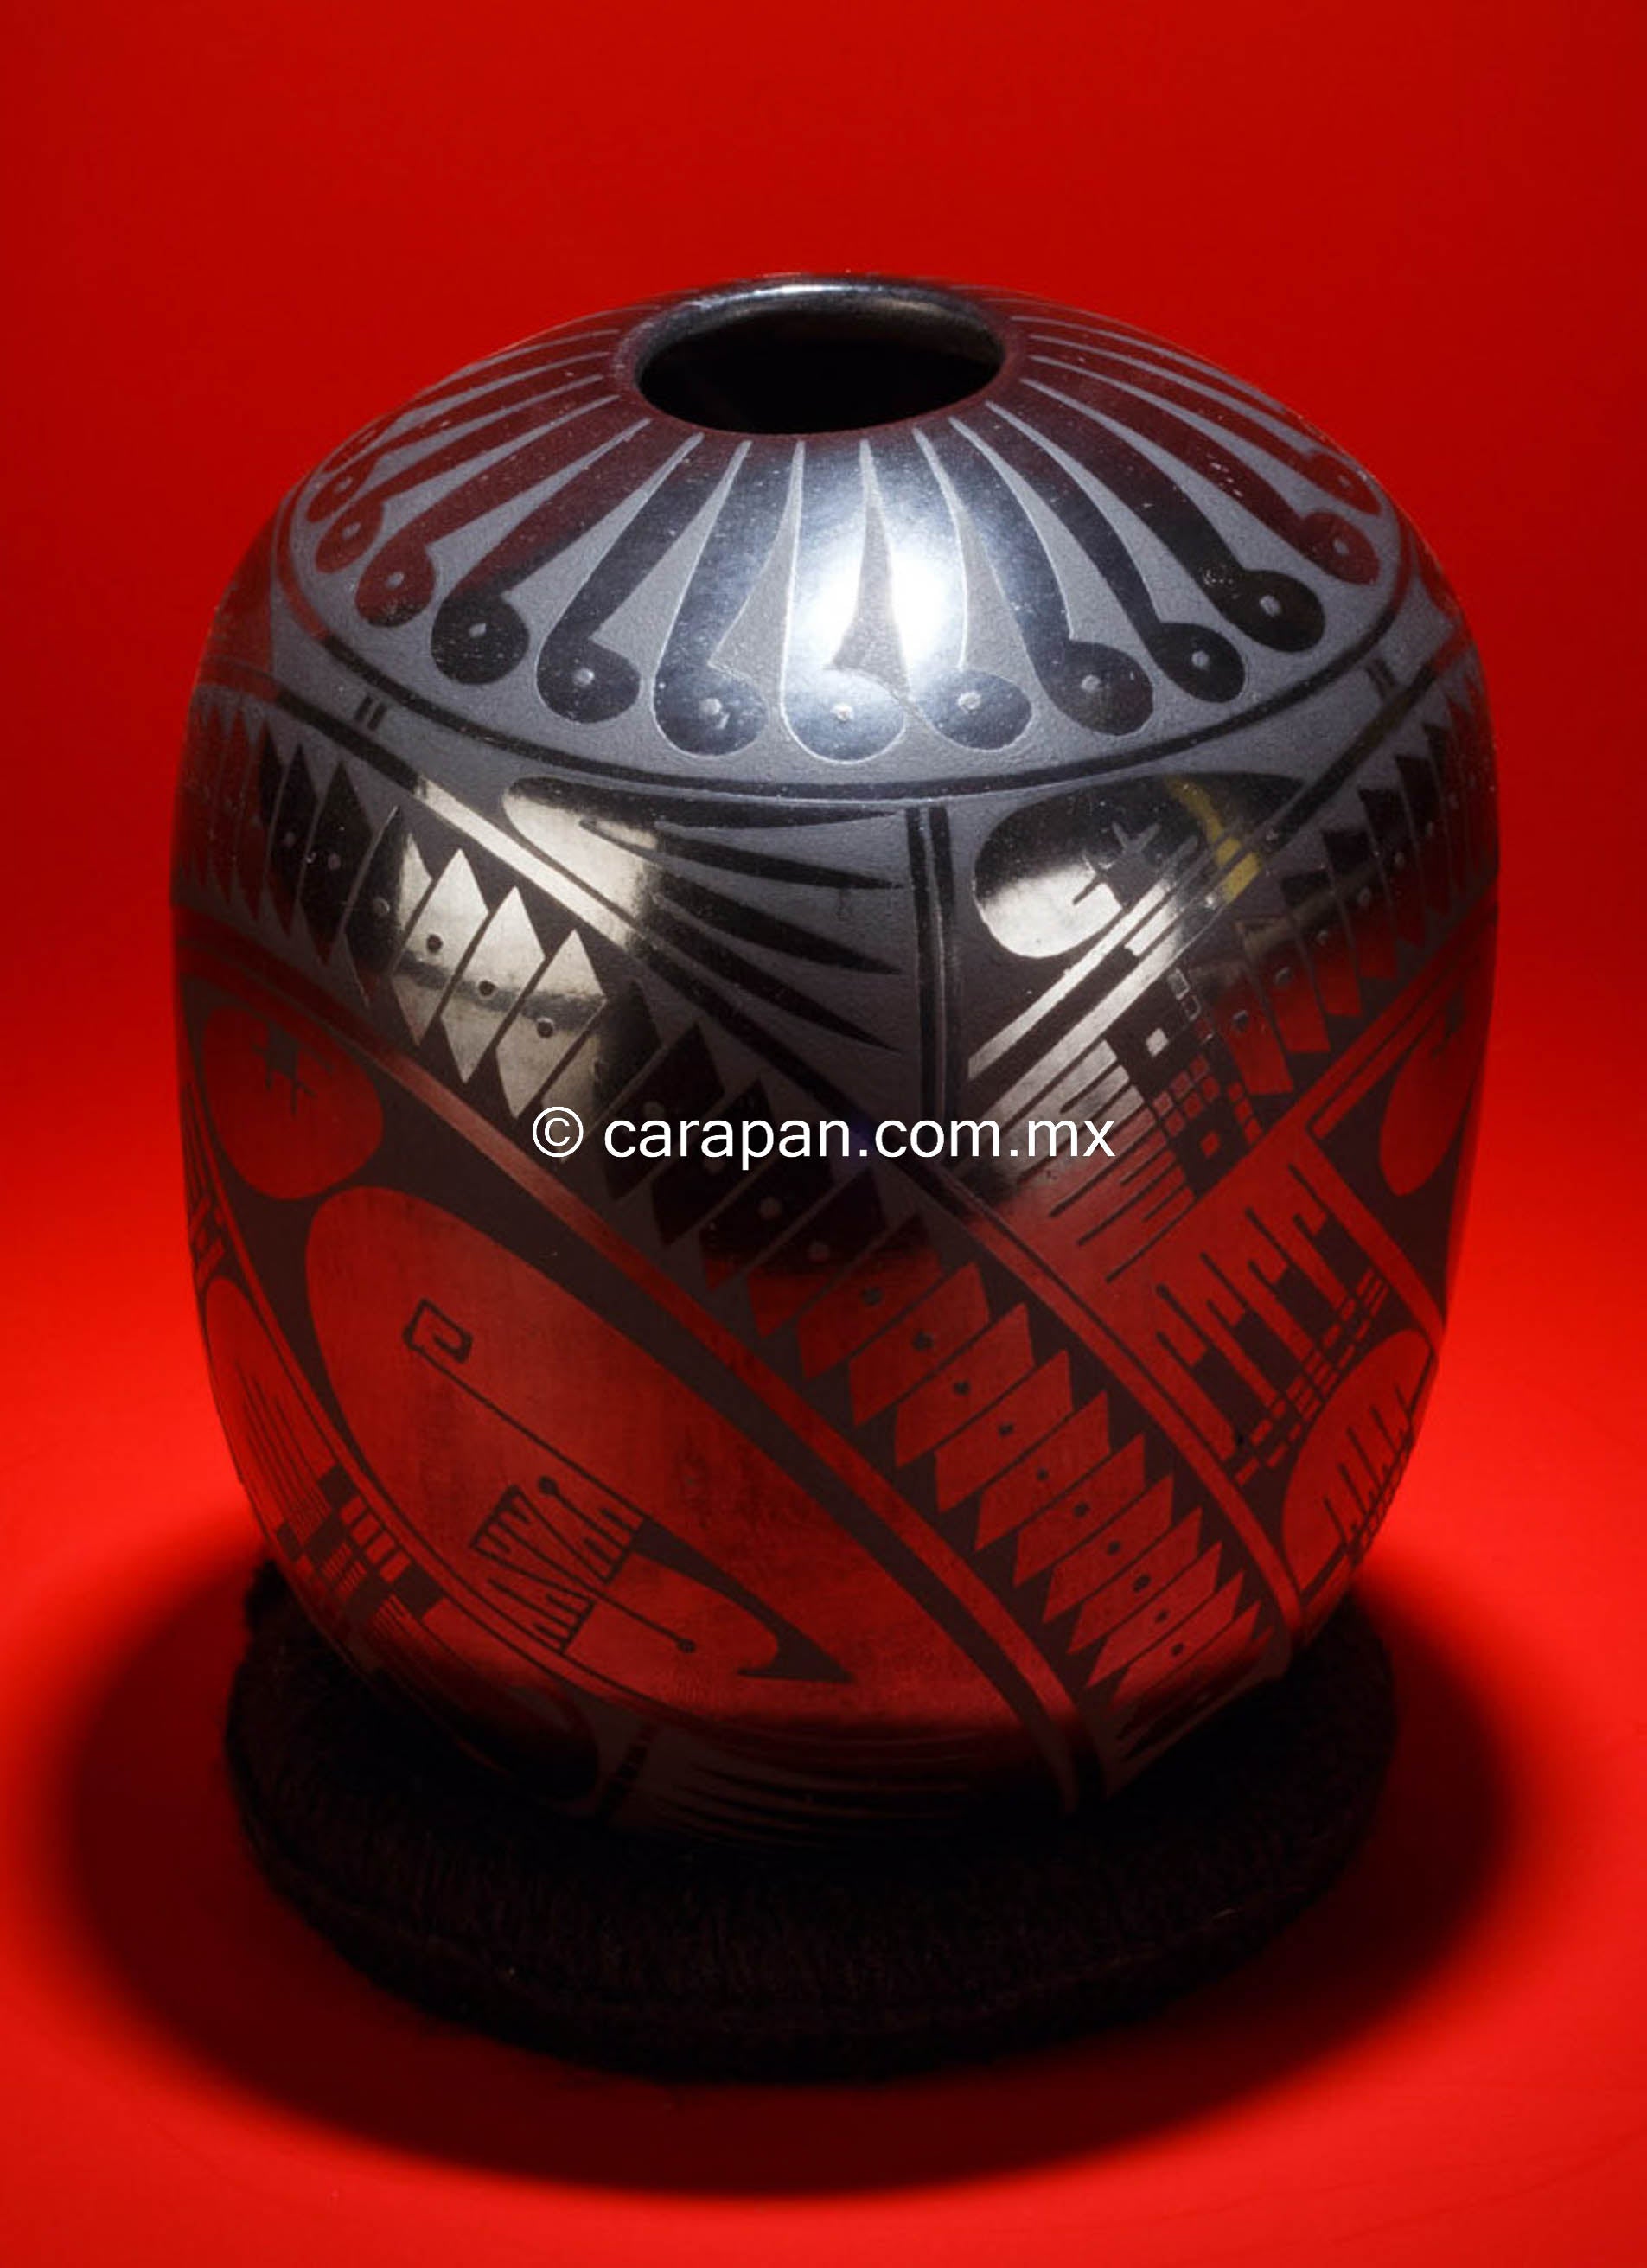 black clay pottery mexico